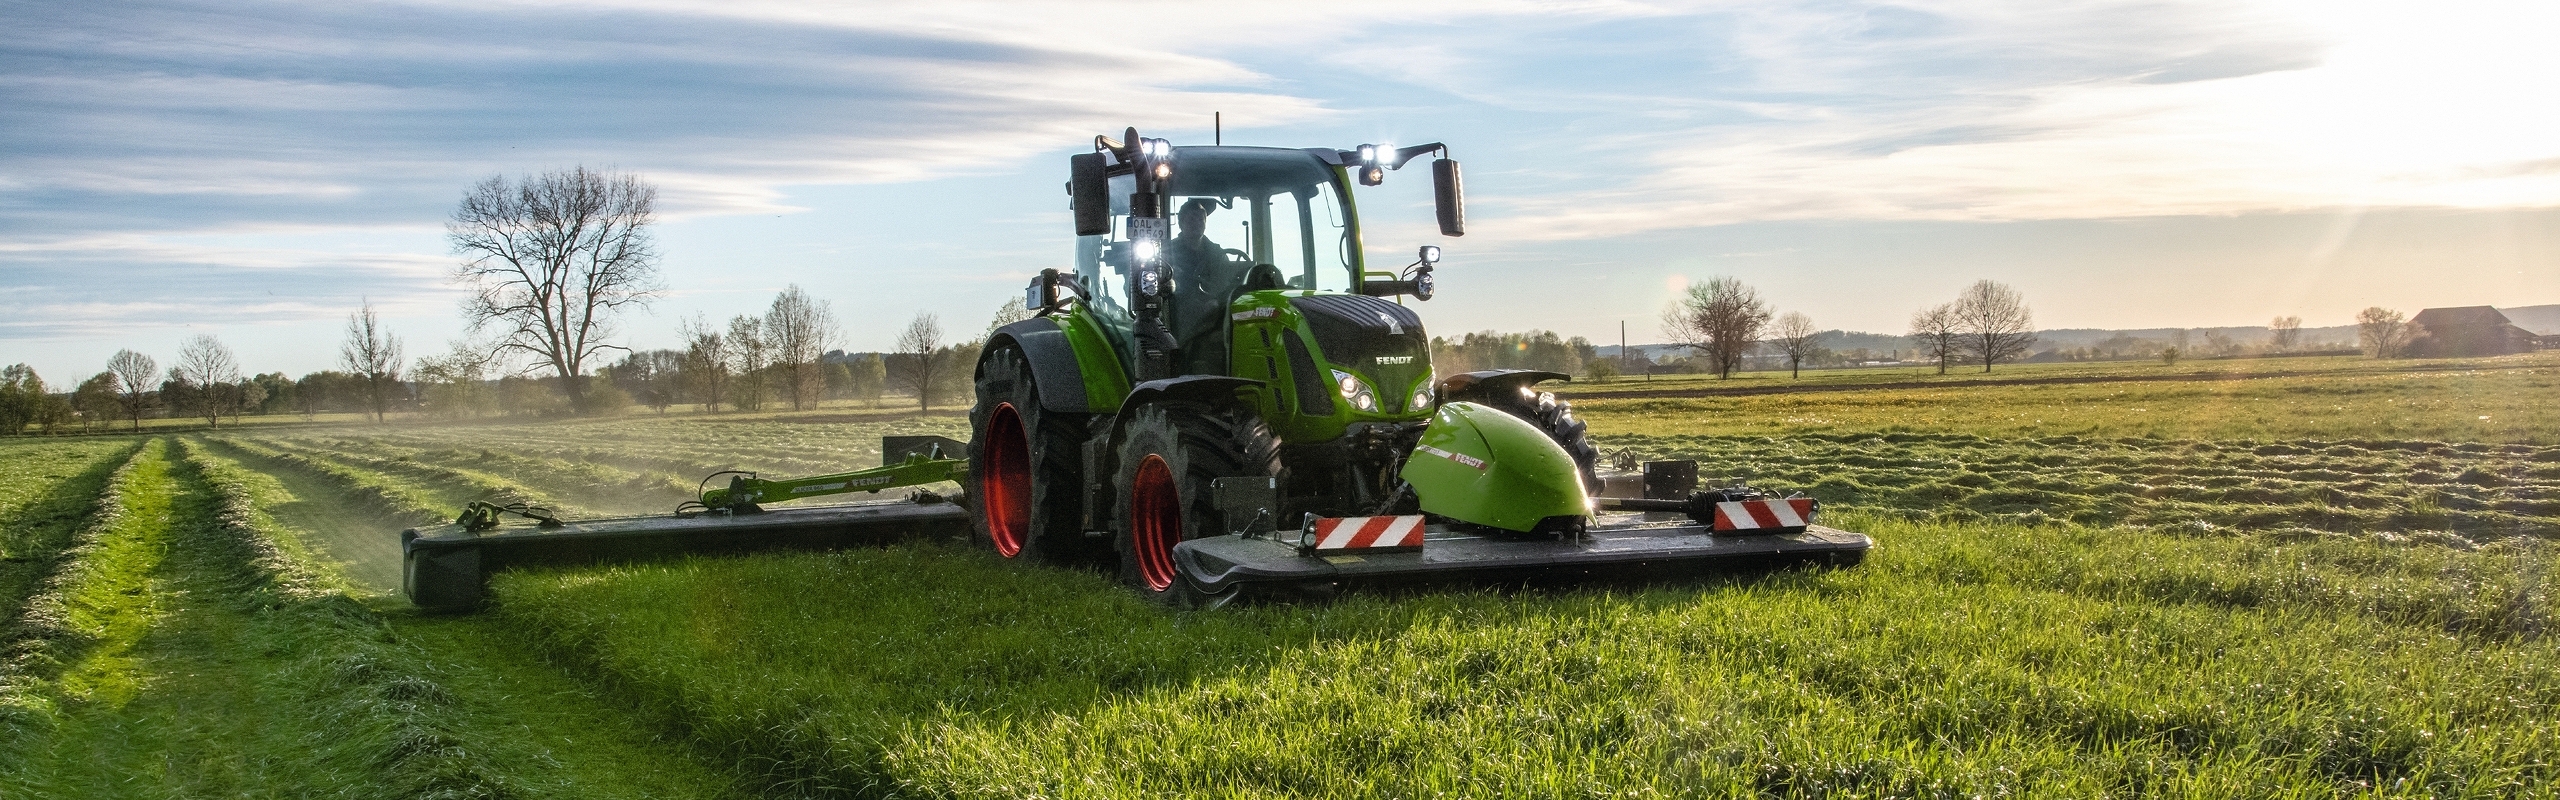 Un tractor Fendt verde con la combinación de siega Slicer durante la cosecha en la pradera